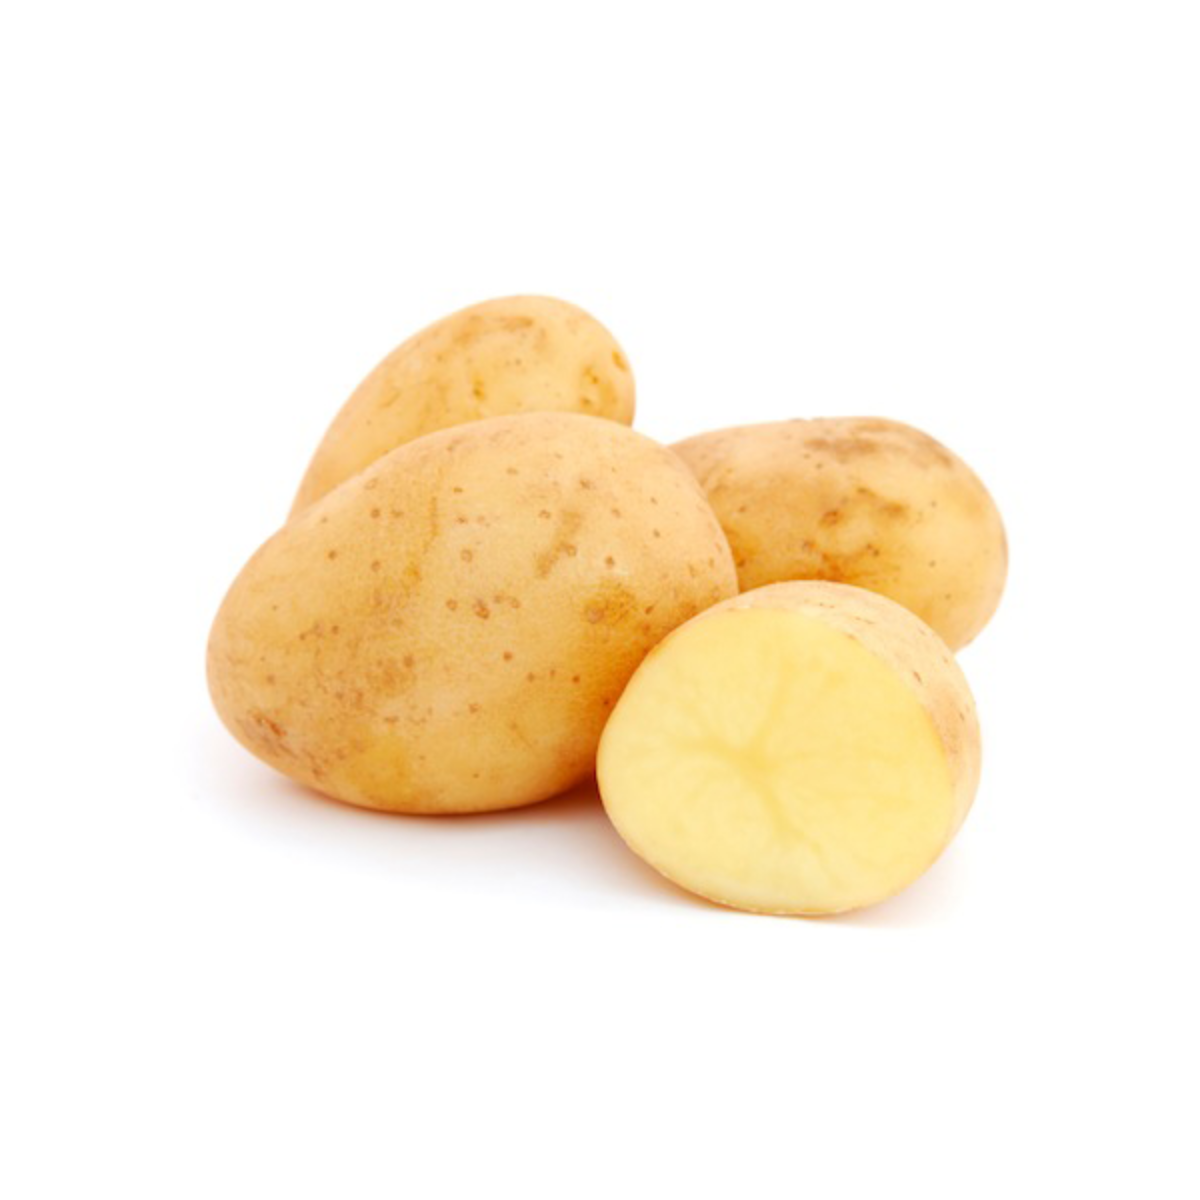 Potatoes picture. Сорт картофеля отолия. Картофель белый. Картошка на белом фоне. Семенной картофель на белом фоне.